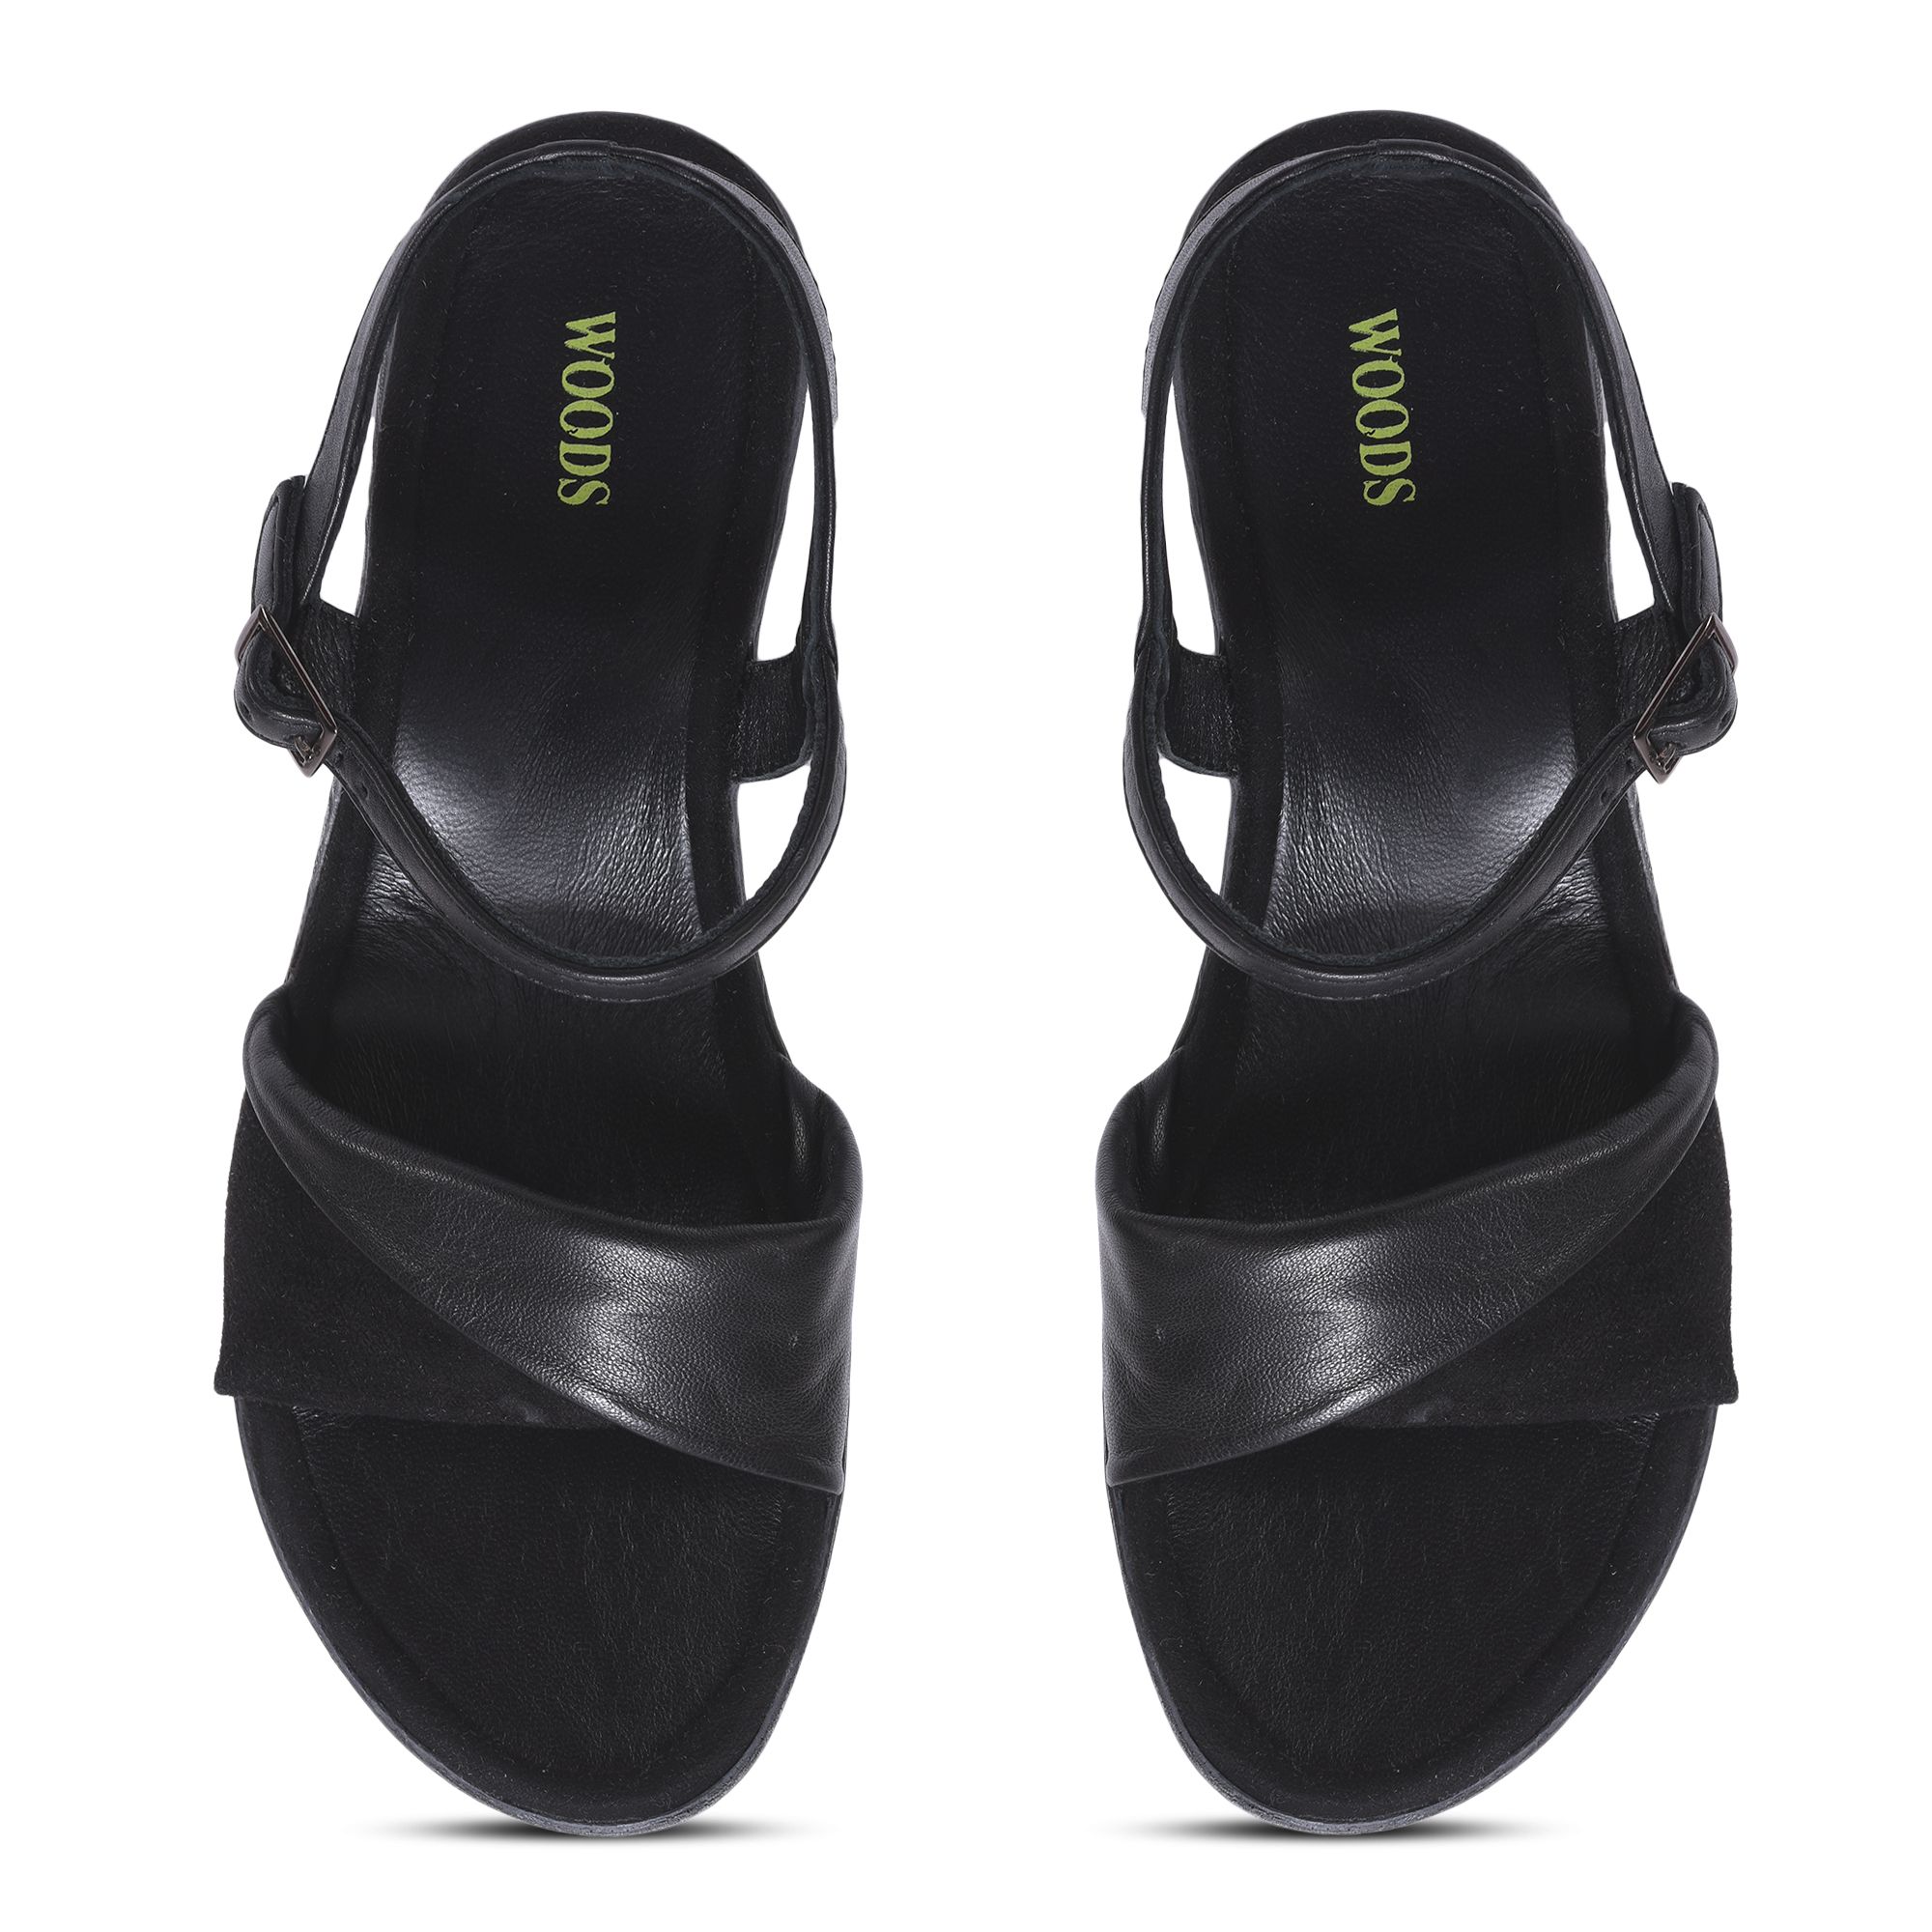 Black wedge sandal for women